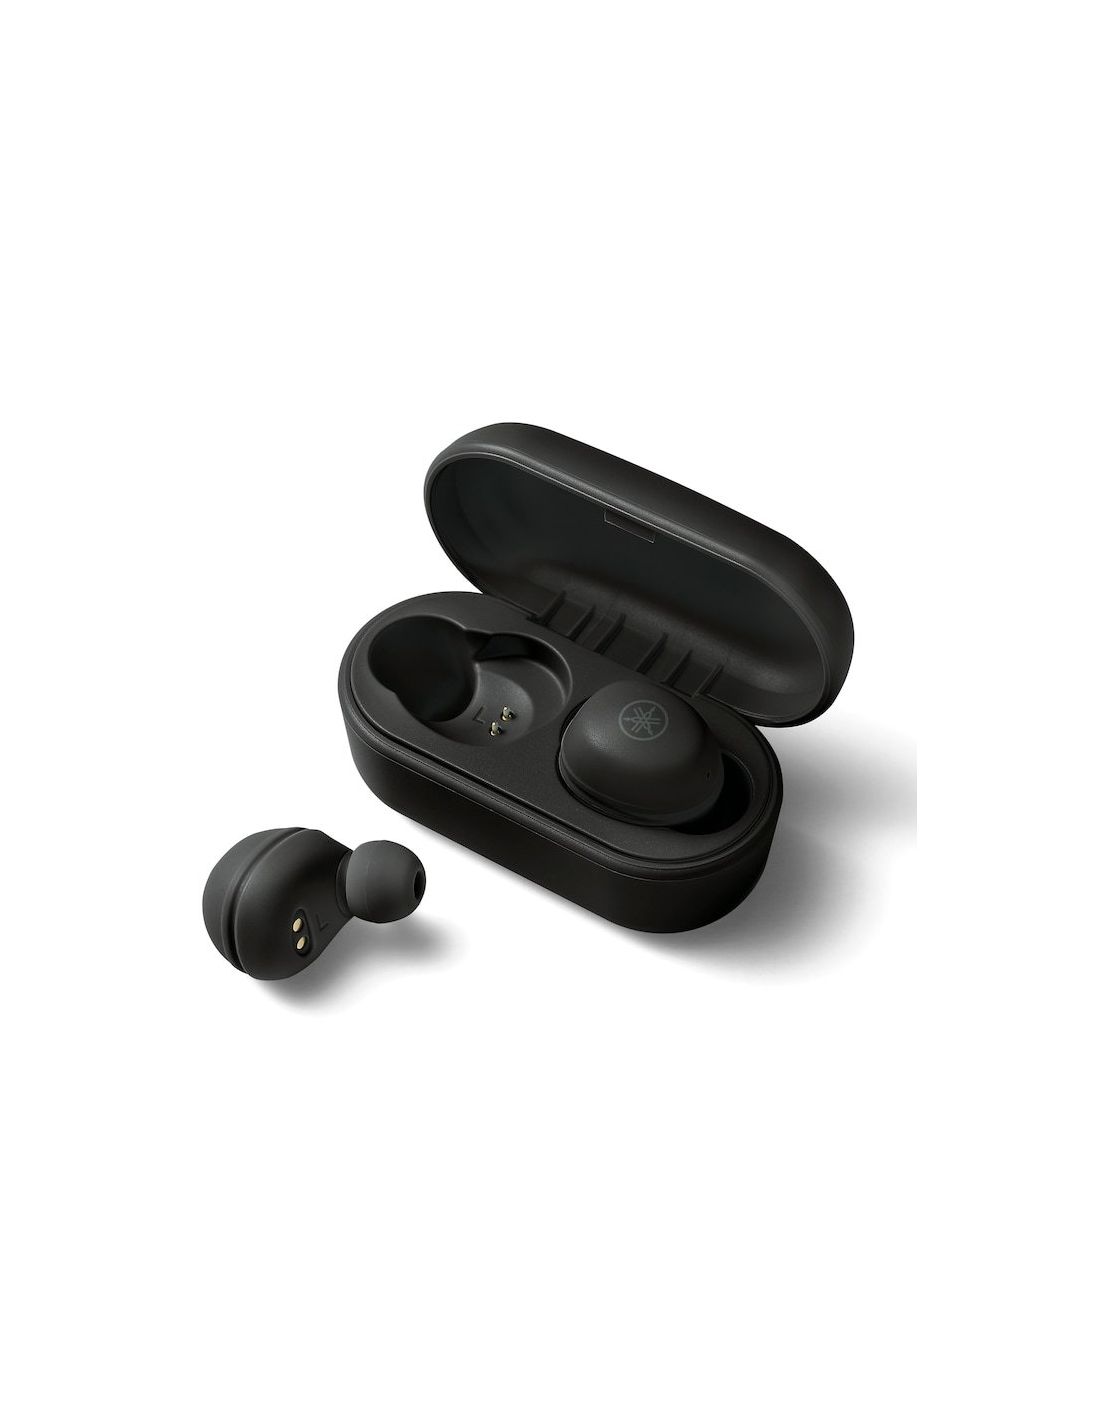 Yamaha Tw-e3a Black Auriculares Bluetooth In Ear